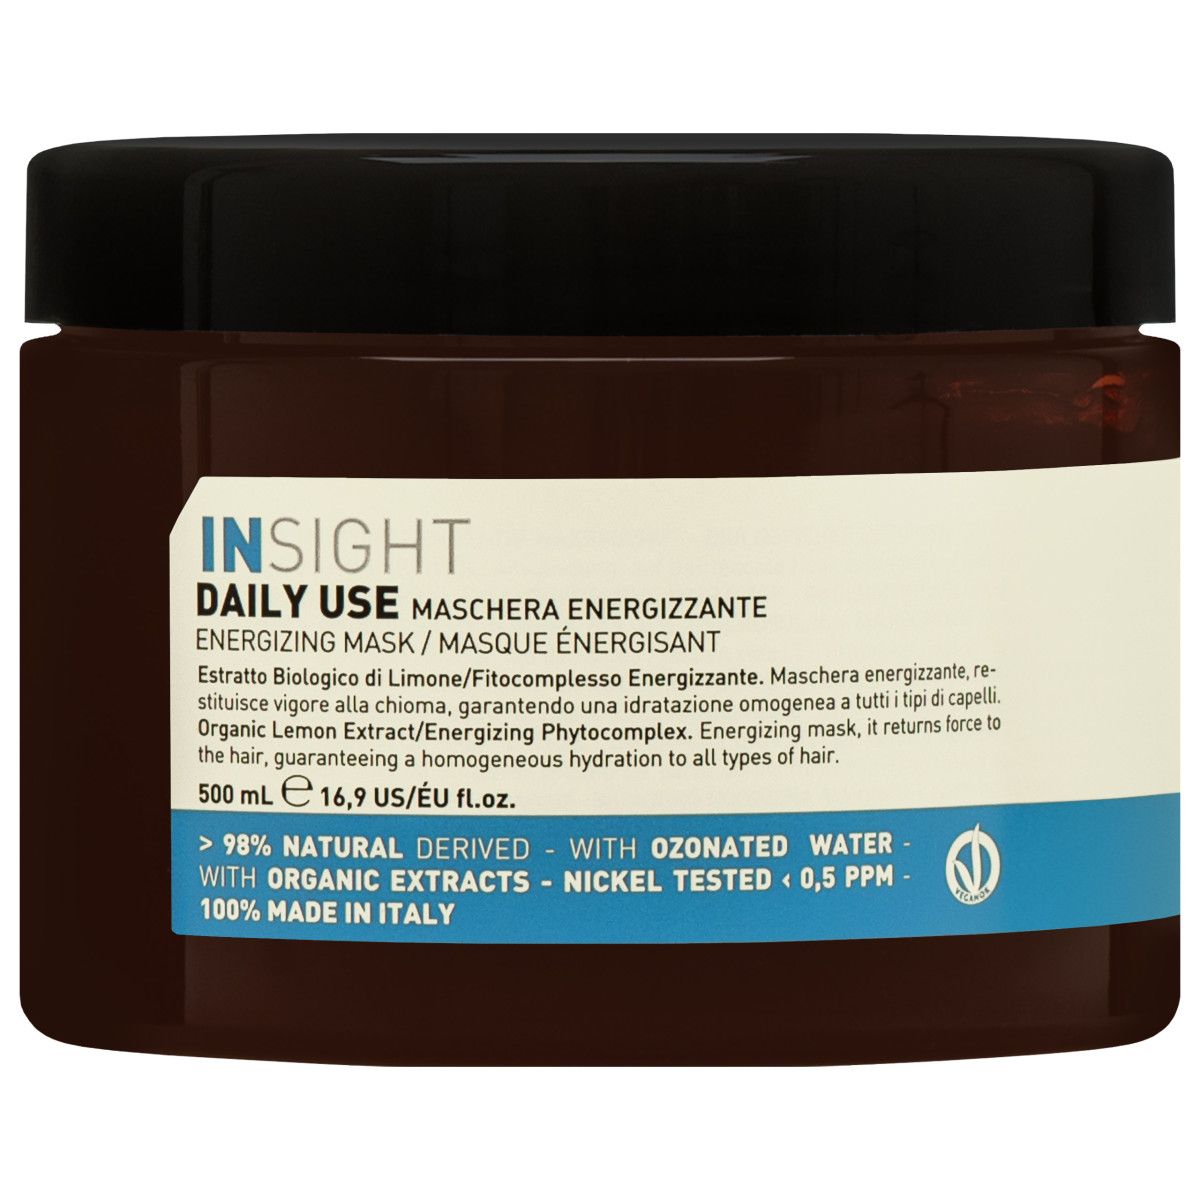 Insight Daily Use Mask - maska do codziennej pielęgnacji włosów, 500ml.